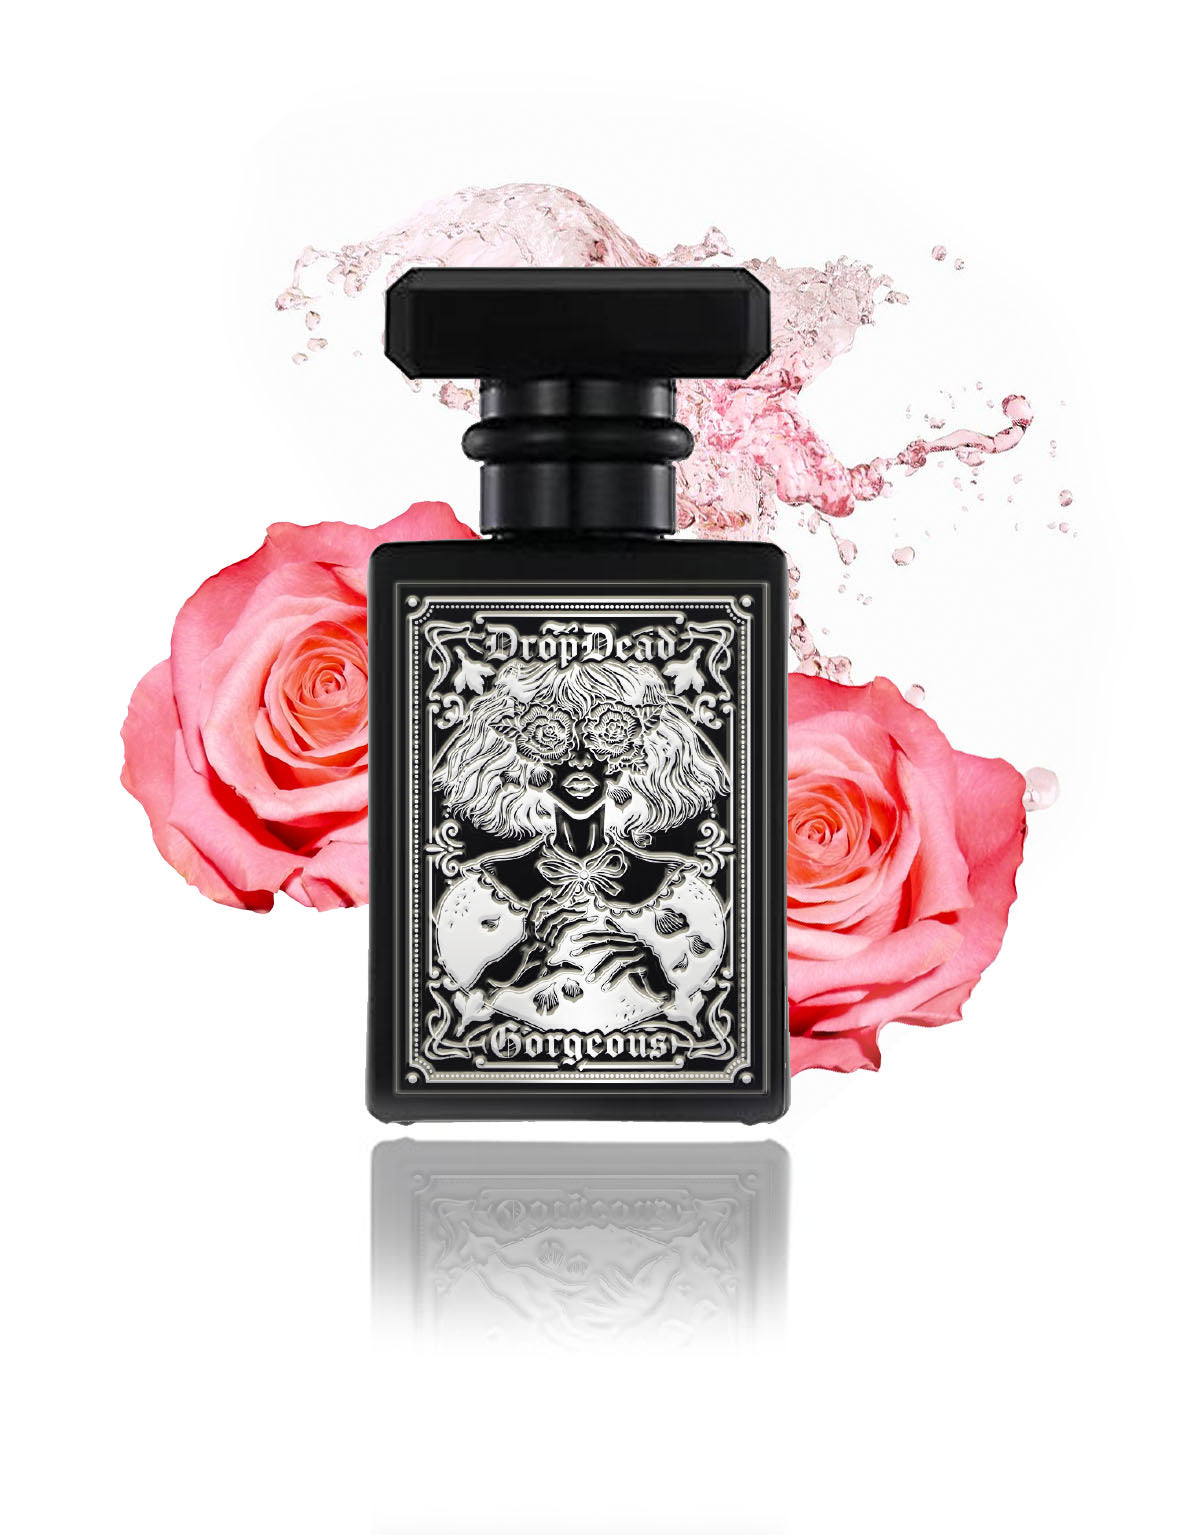 QUEEN OF HEARTS - Prosecco Rose Black Label Mini Perfume